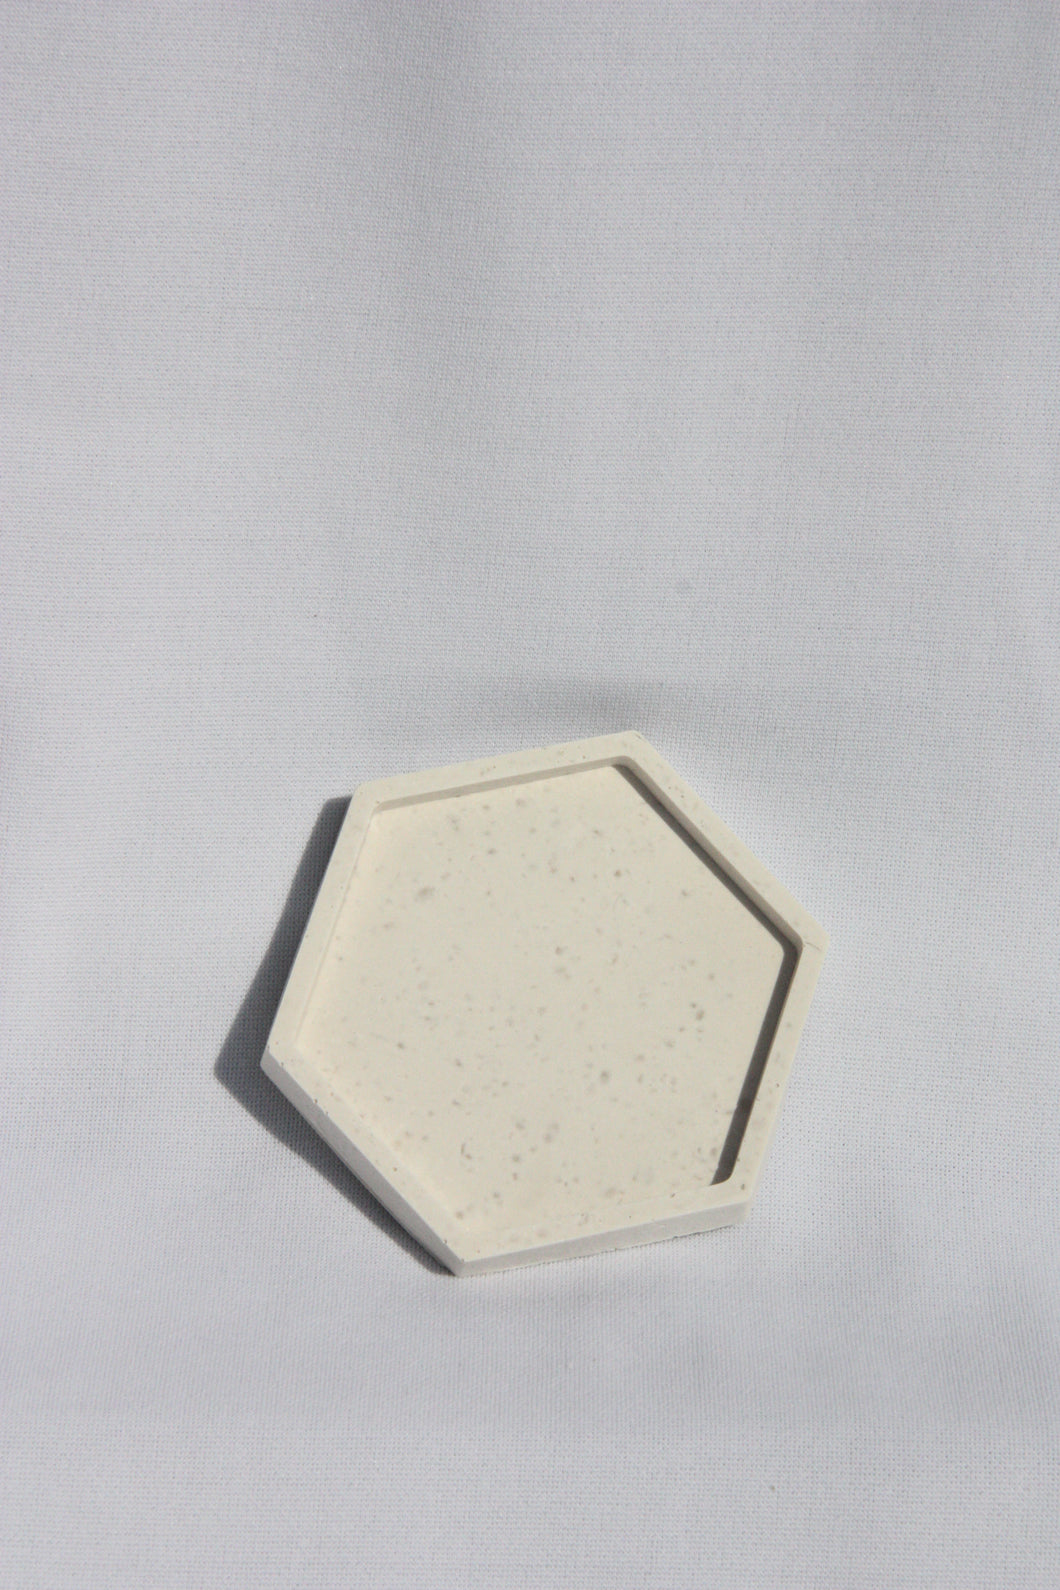 Hexagon coaster